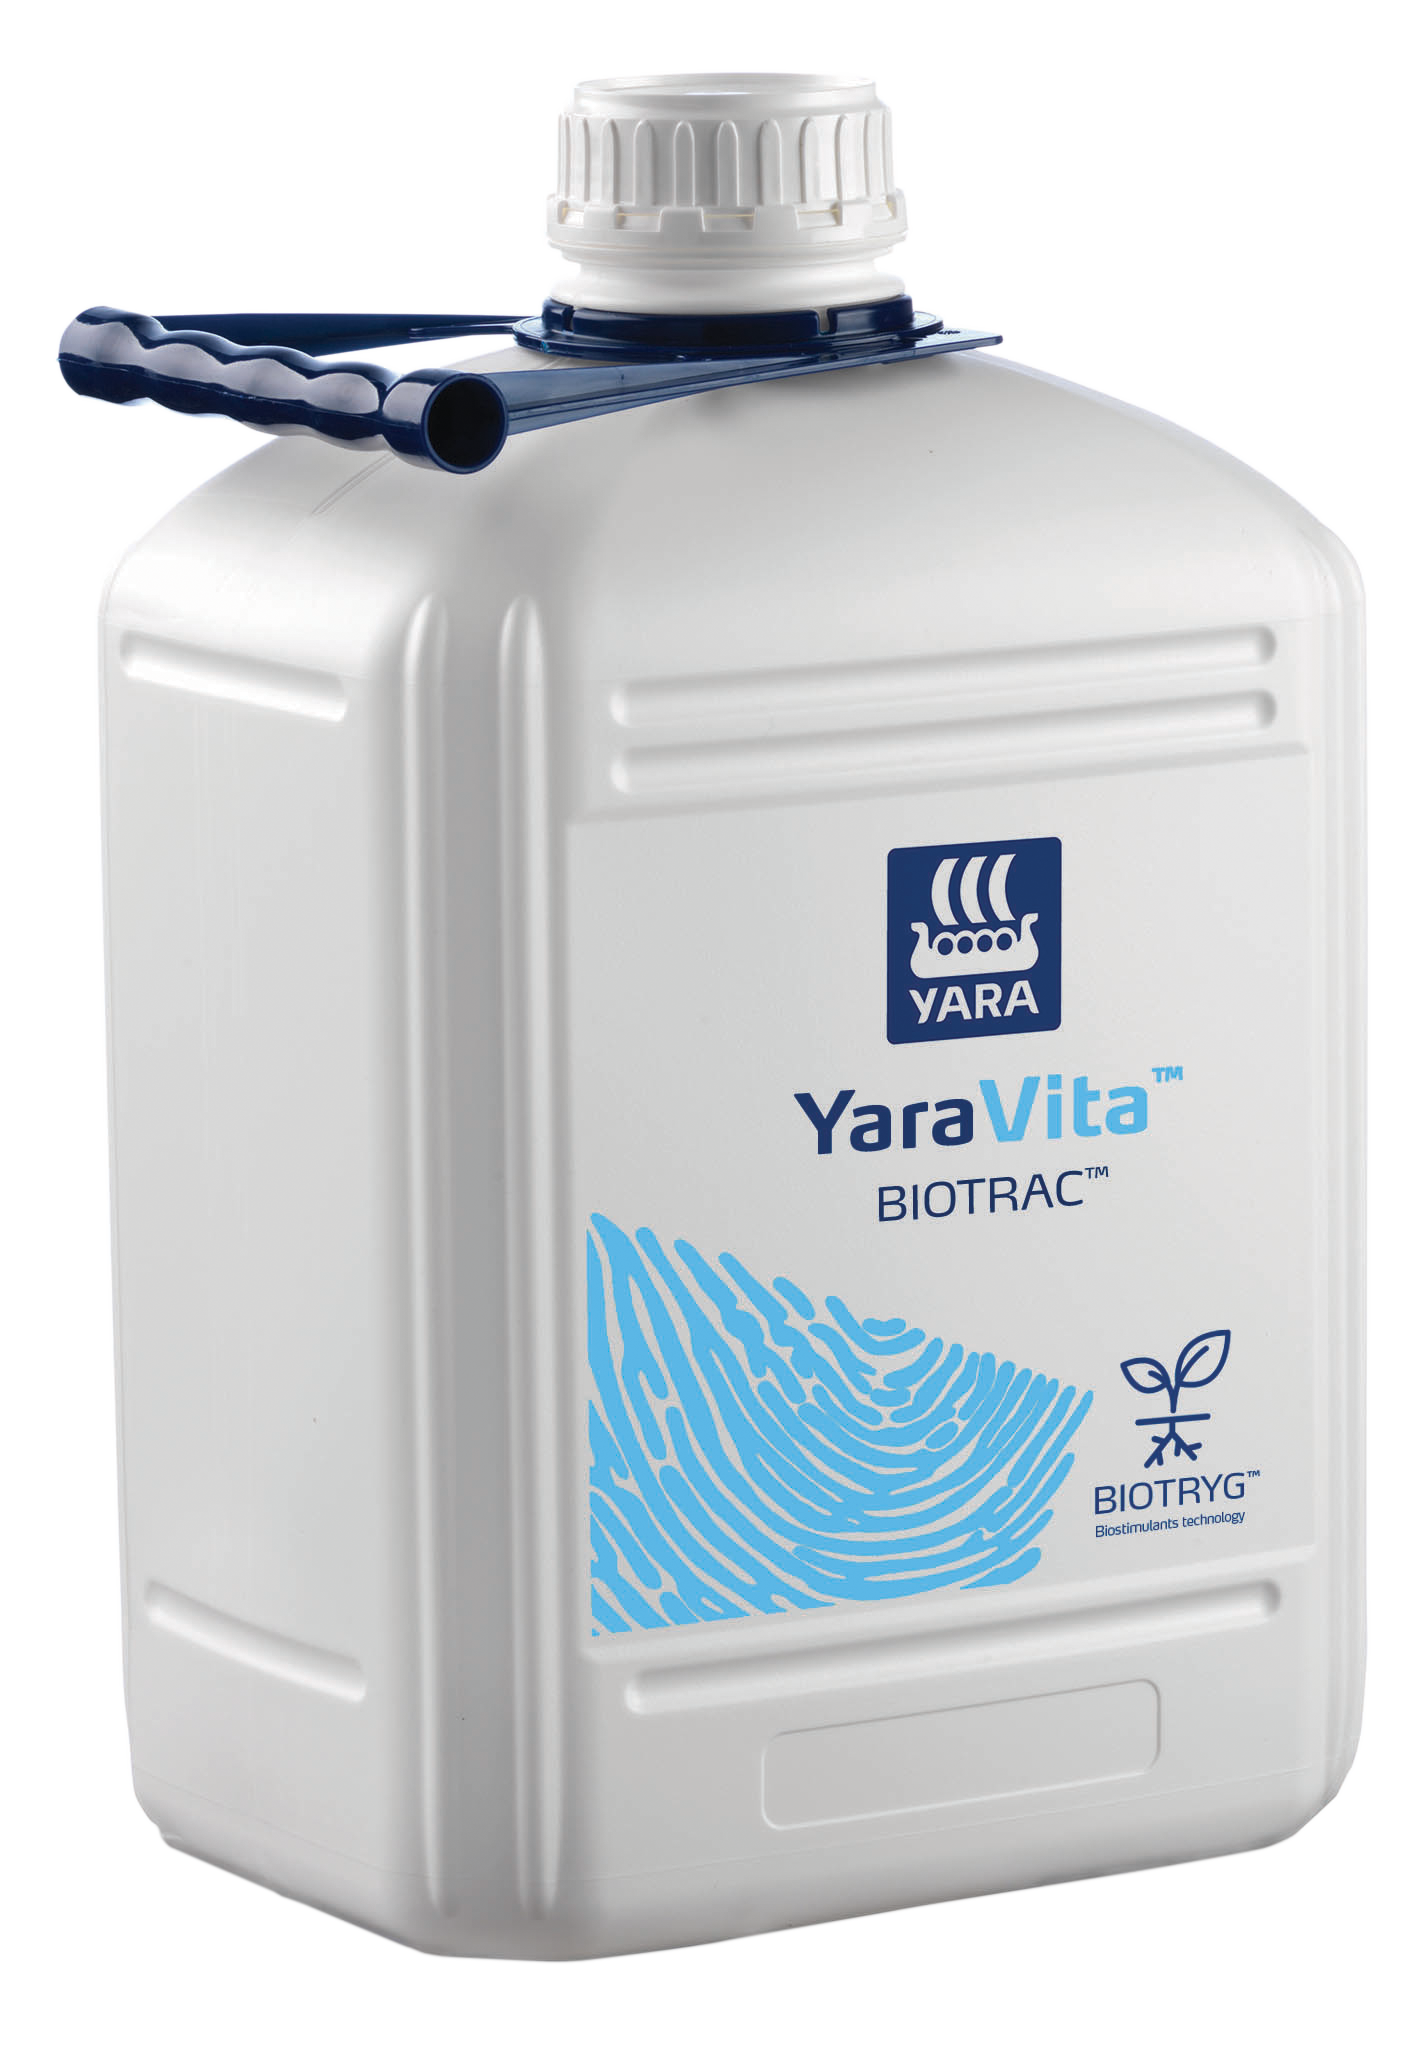 YaraVita Biotrac 100 L - 180 L